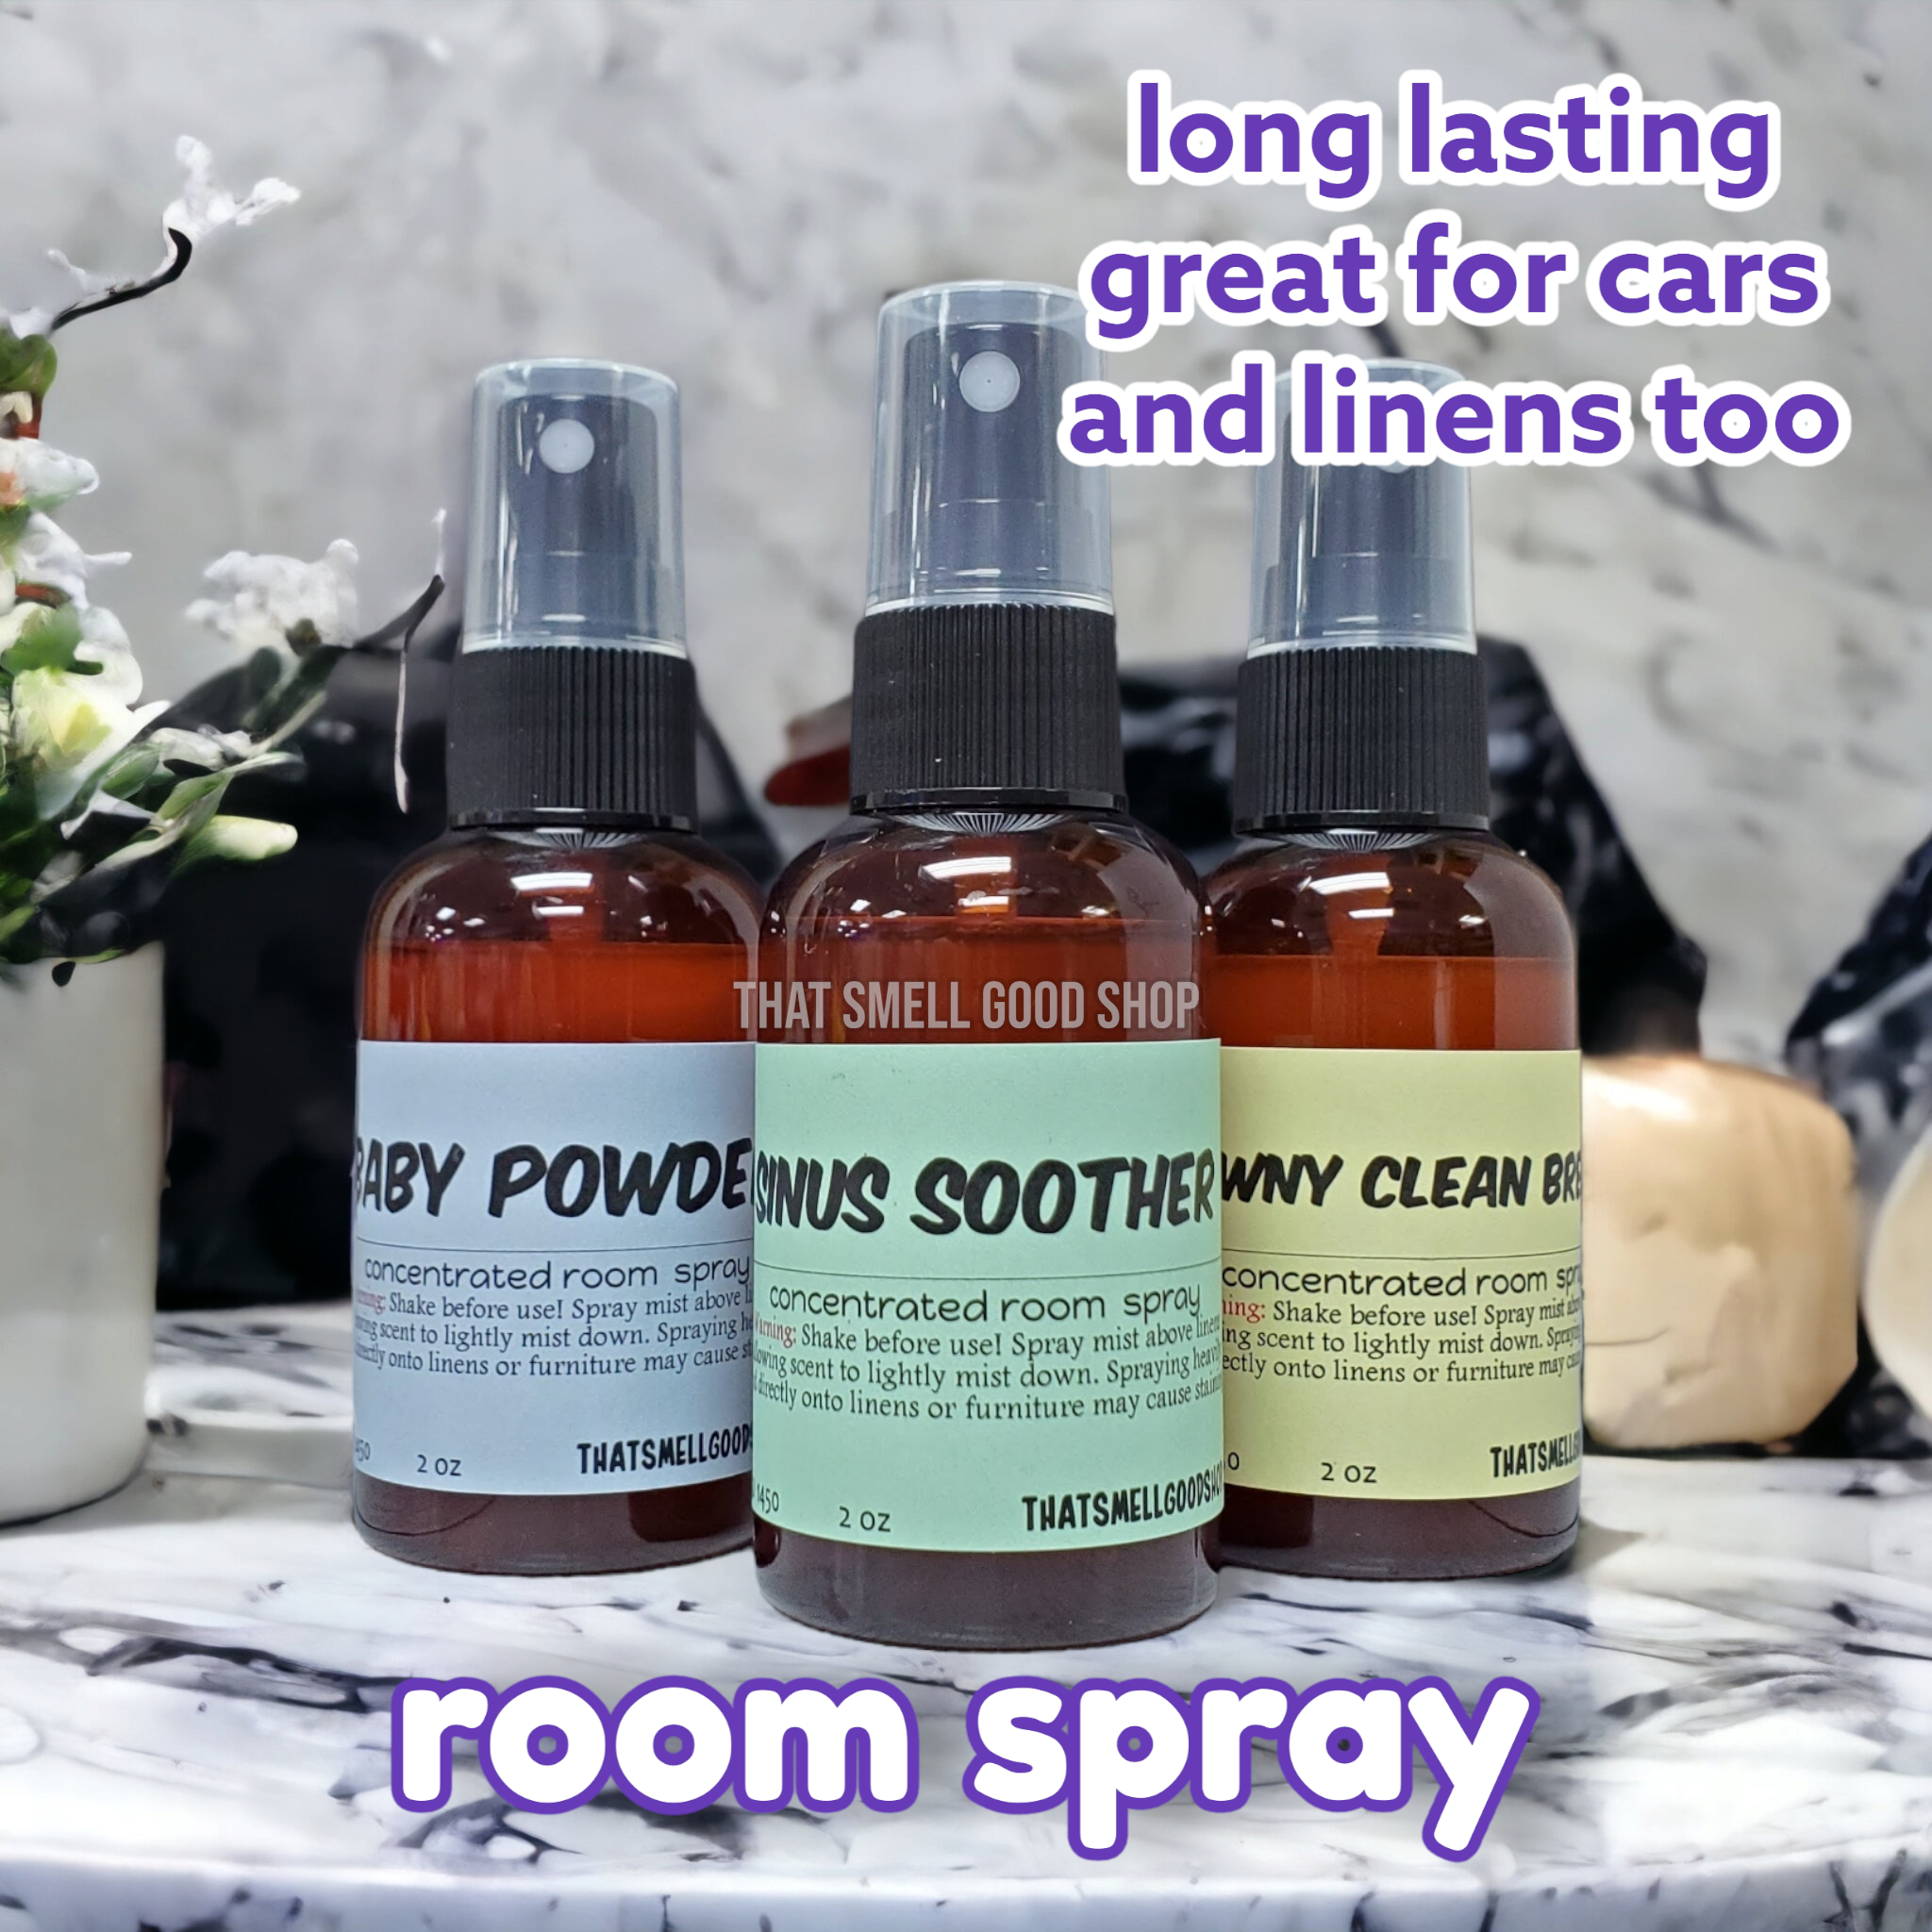 2 oz Room Sprays